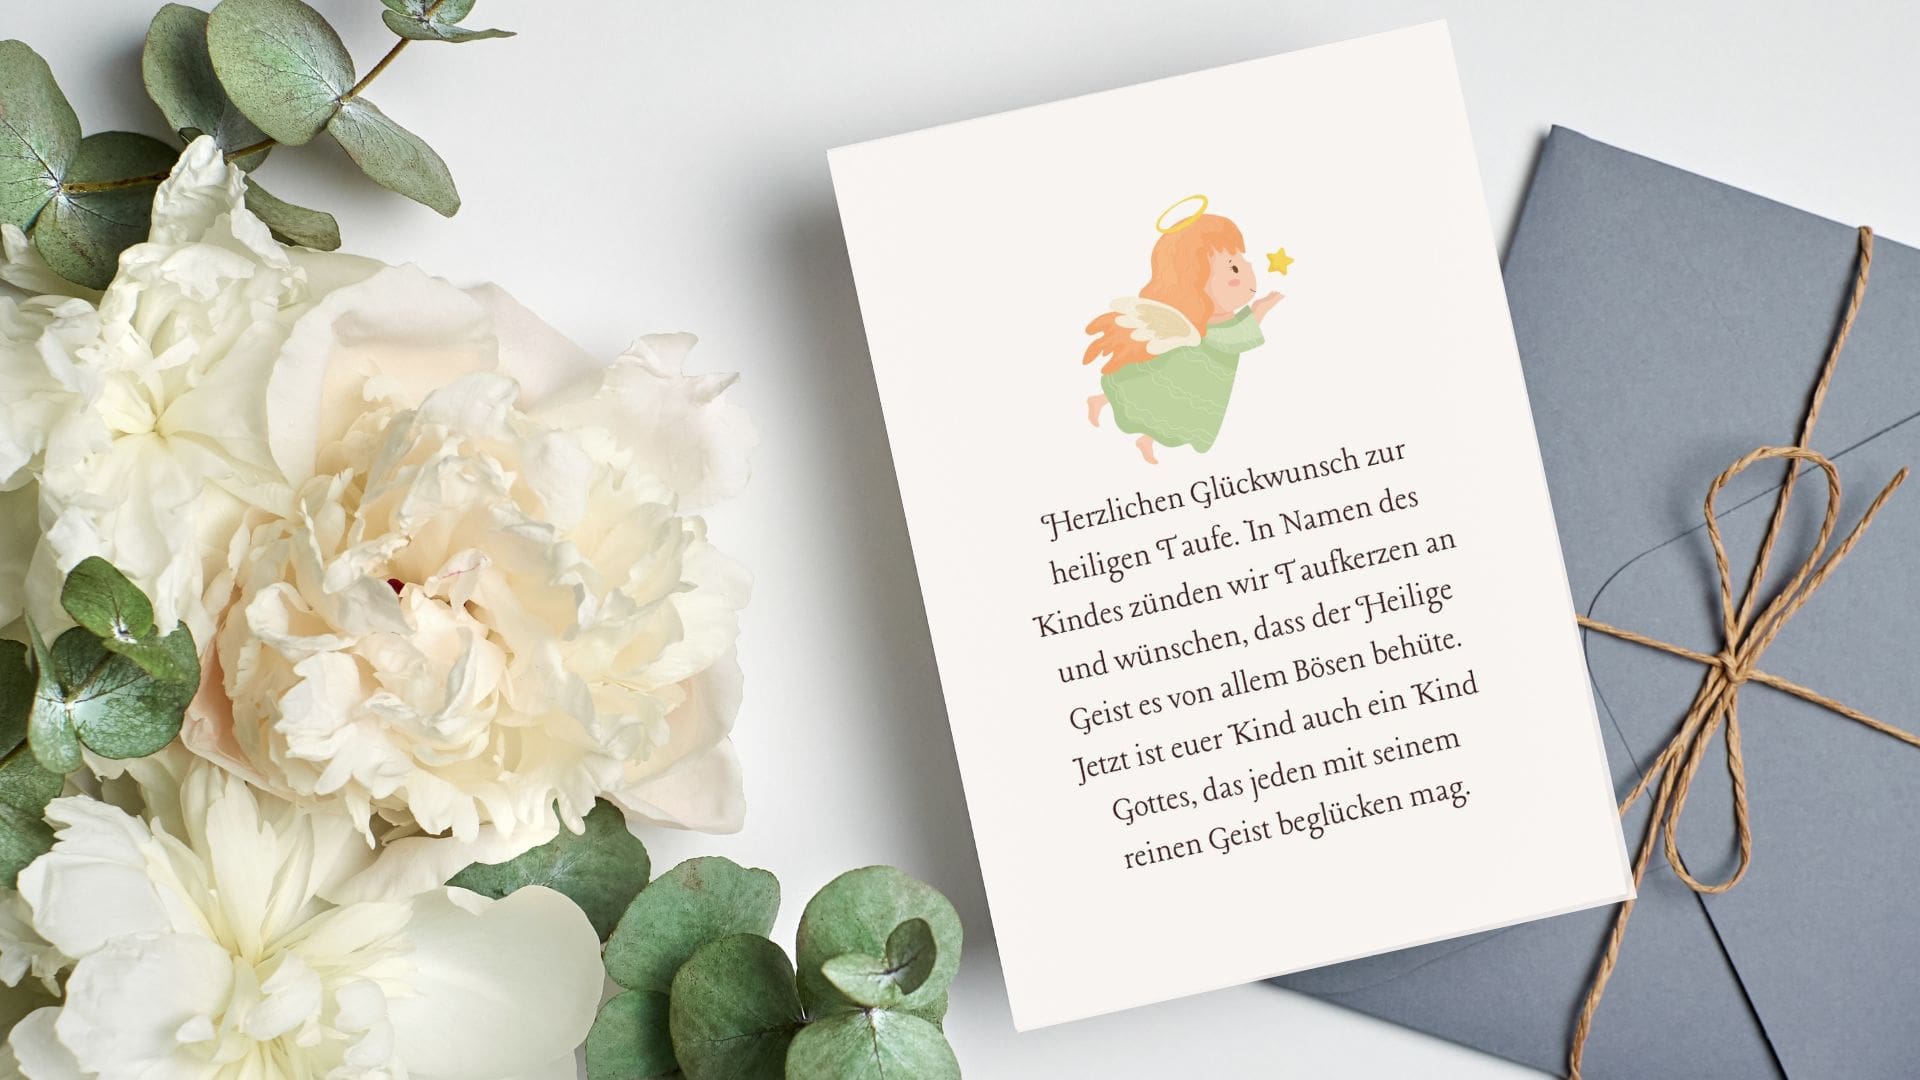 Blumen, Umschlag und eine illsutrierte Karte mit Glückwünschen zur Taufe an die Eltern